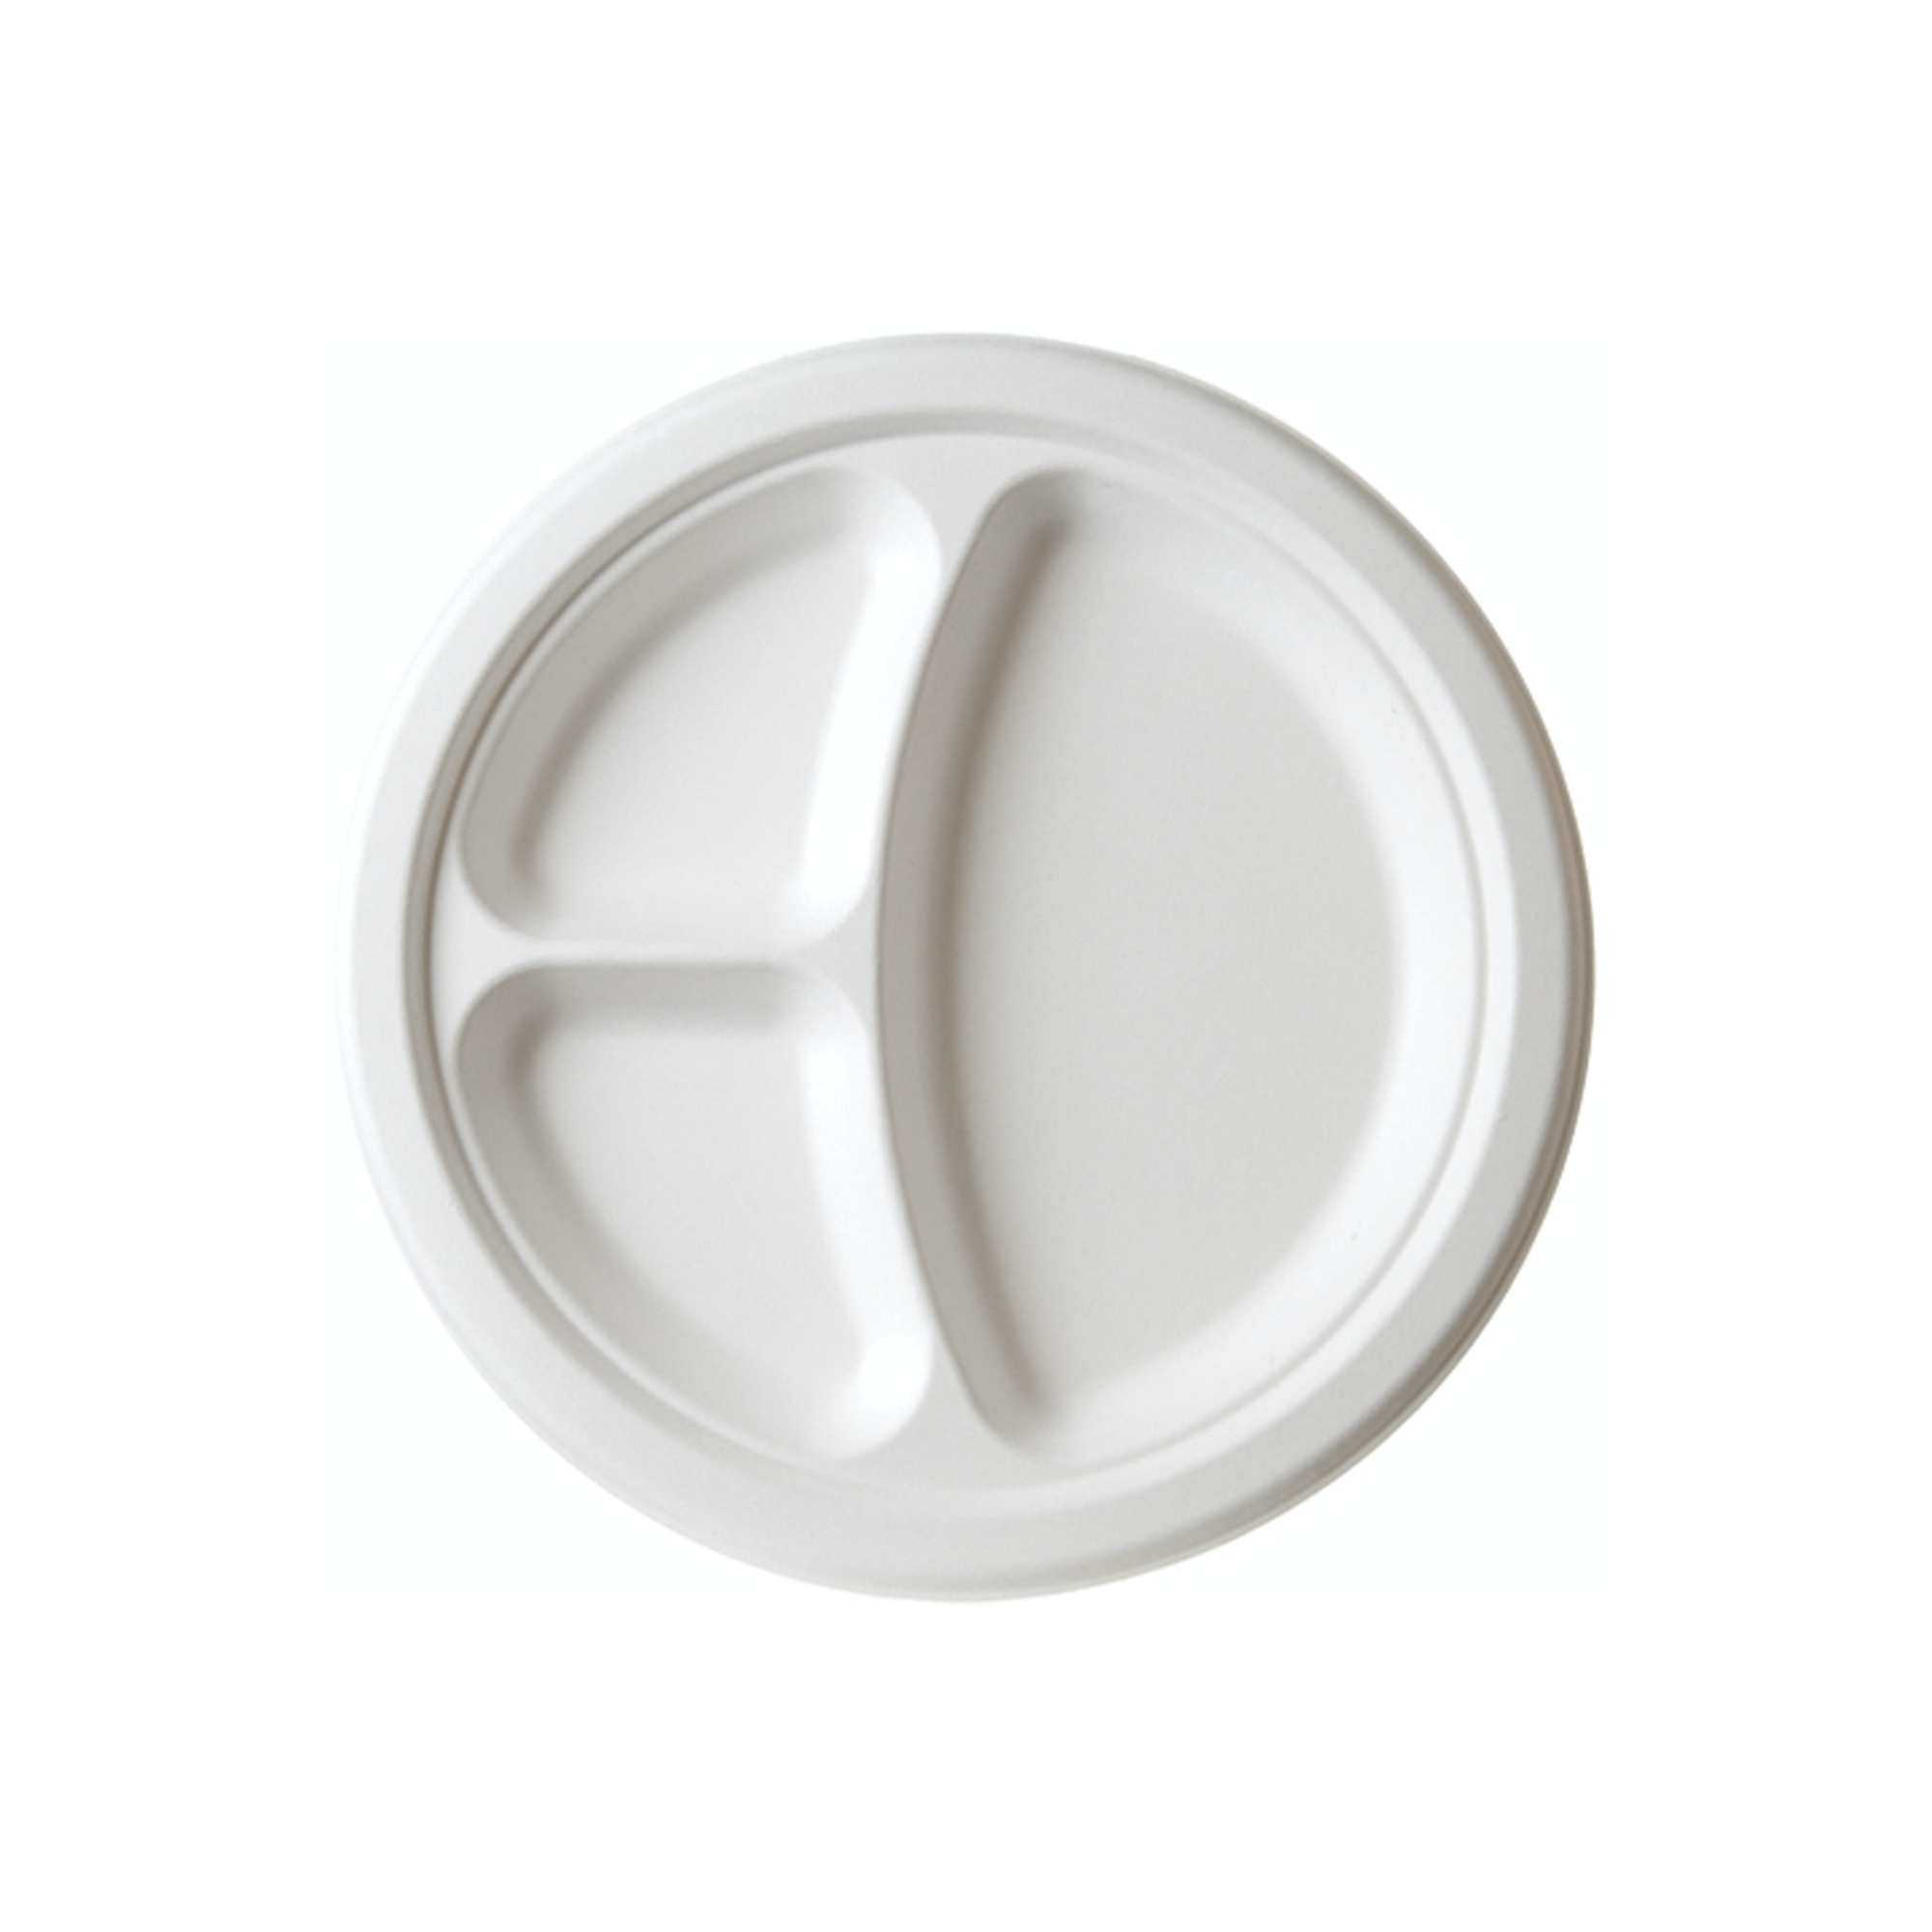 Lapos tányér - Cukornád lapos tányér 250 mm 3 részre osztott - 50 db - Greenstic